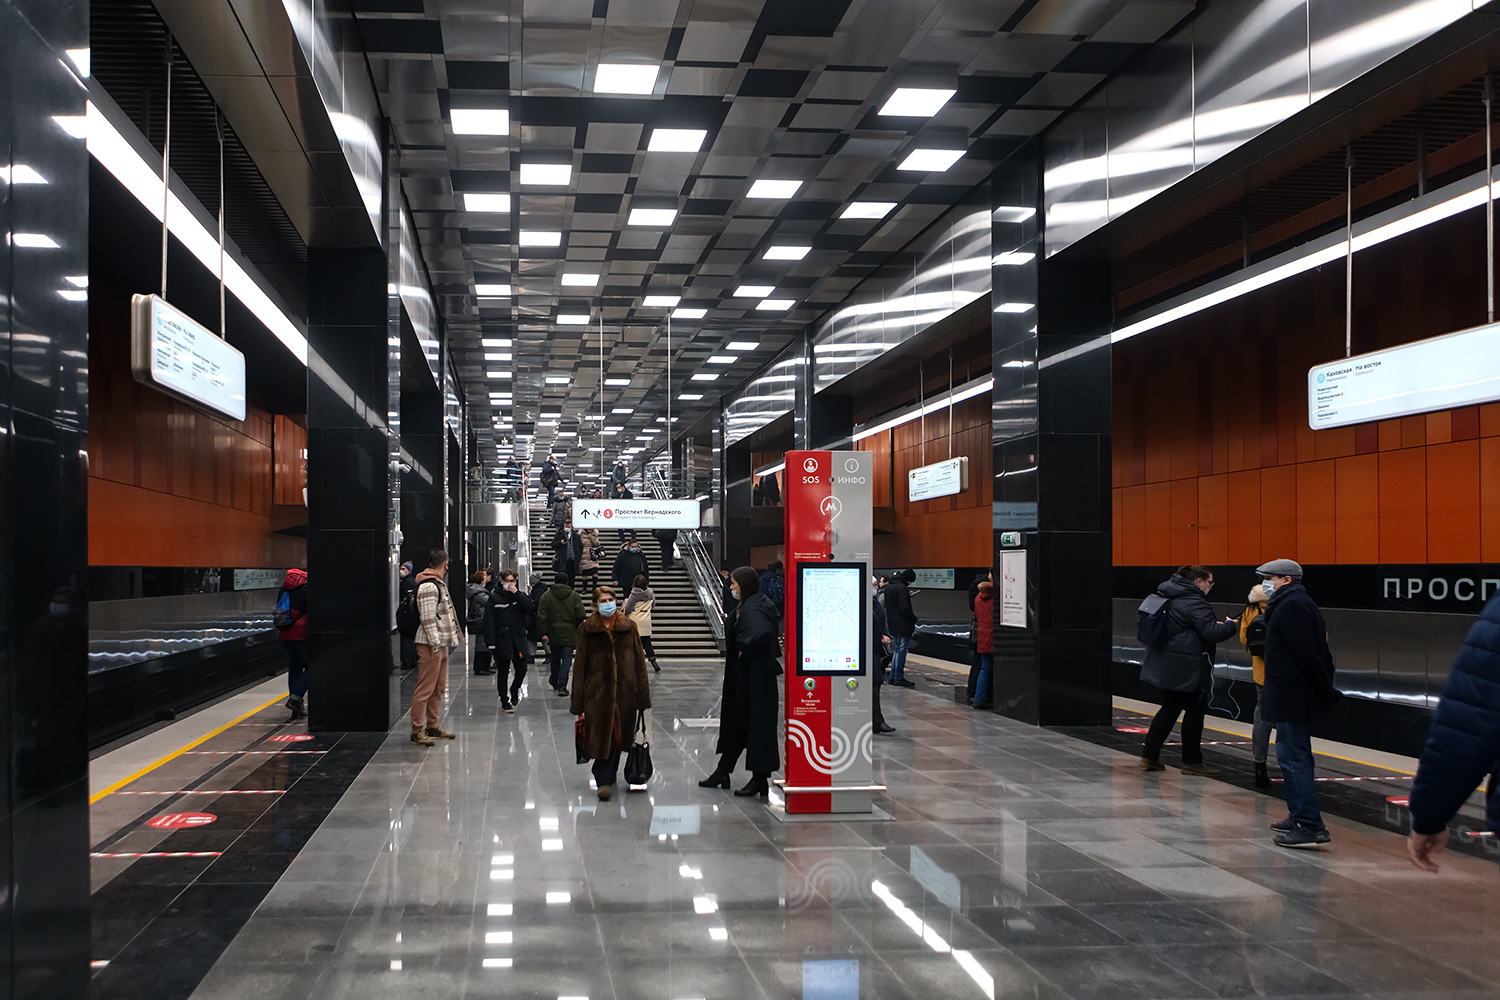 莫斯科 — Metropolitain — [11] Bol'shaya Koltsevaya Line; 莫斯科 — Opening of stations on the Bolshaya Koltsevaya line on the Mnyovniki — Kakhovskaya section on 07/12/2021